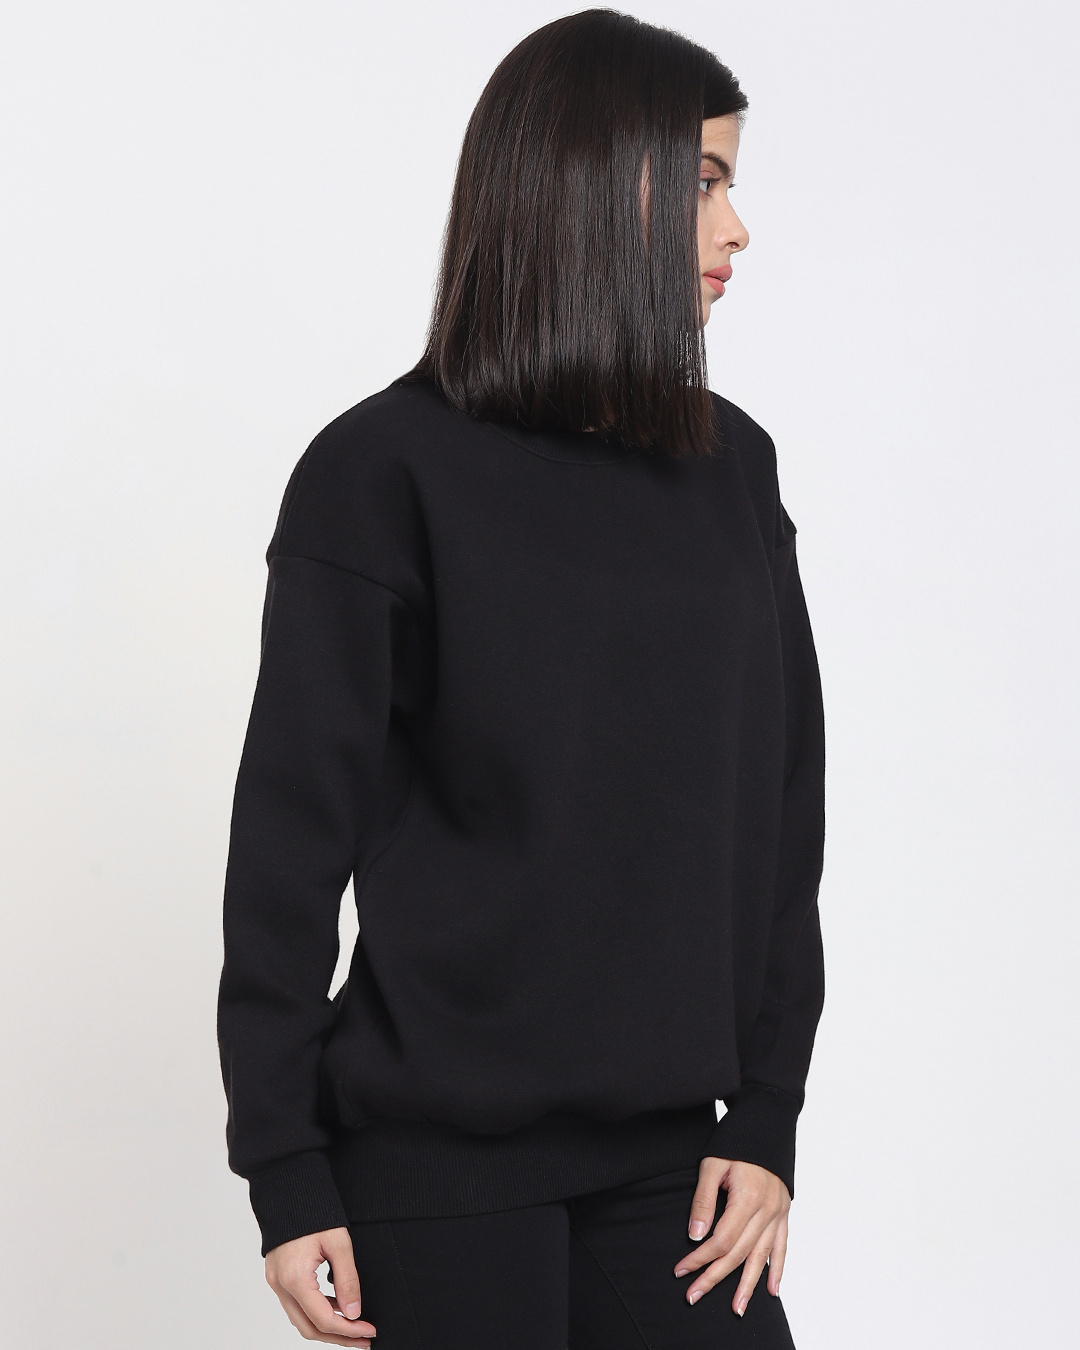 Buy Women's Black Oversized Plus Size Sweatshirt Online at Bewakoof